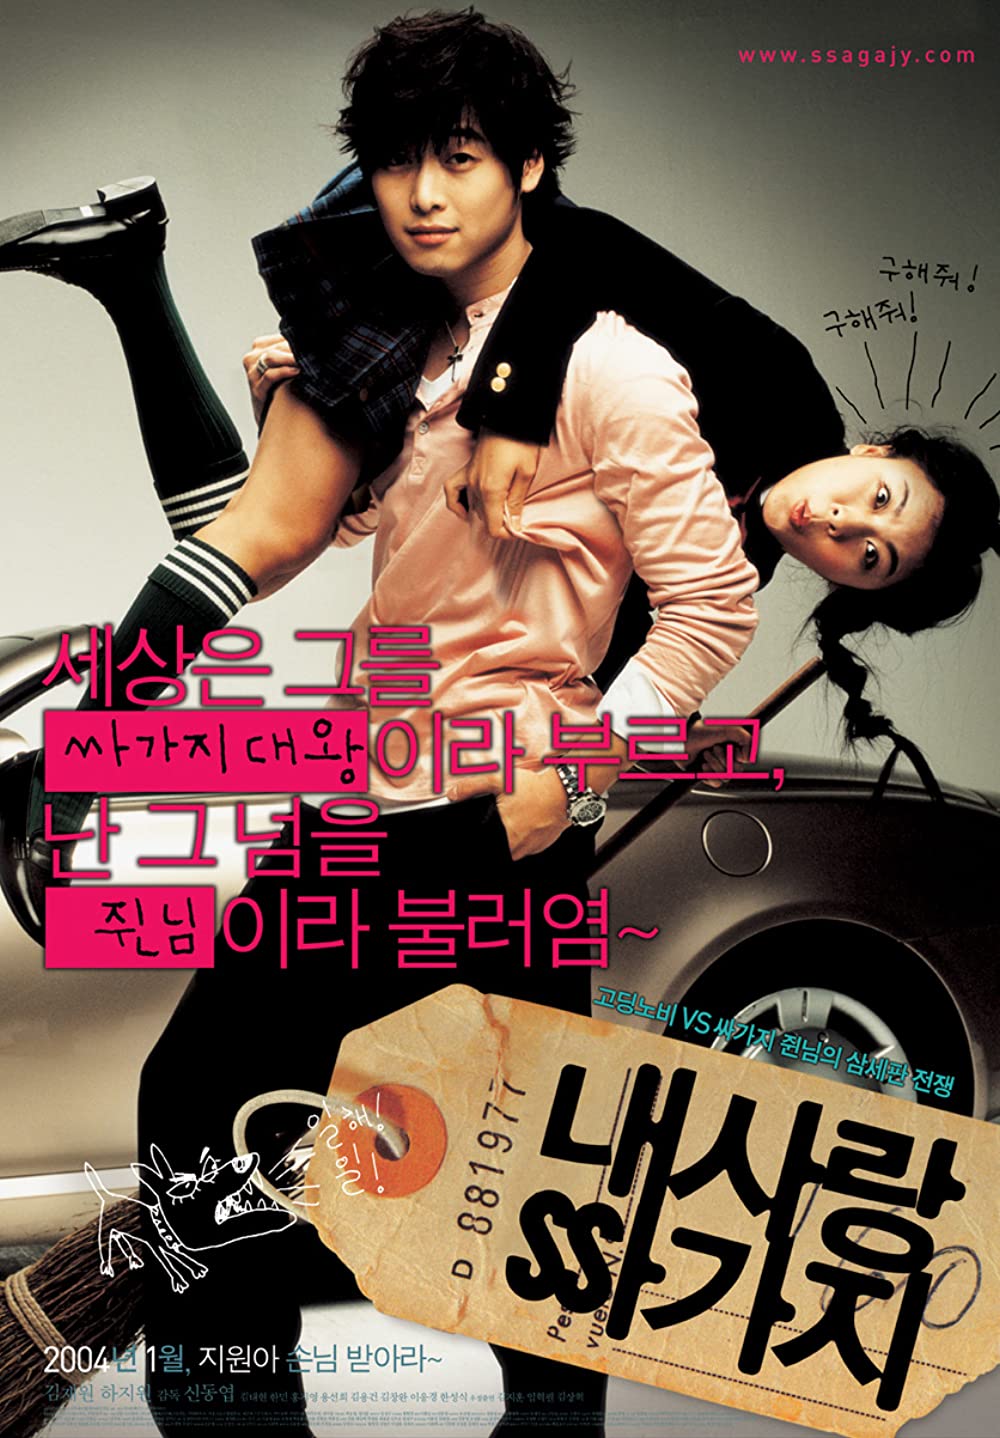 11 Film Korea romantis komedi, putus nyambung di Tune In For Love